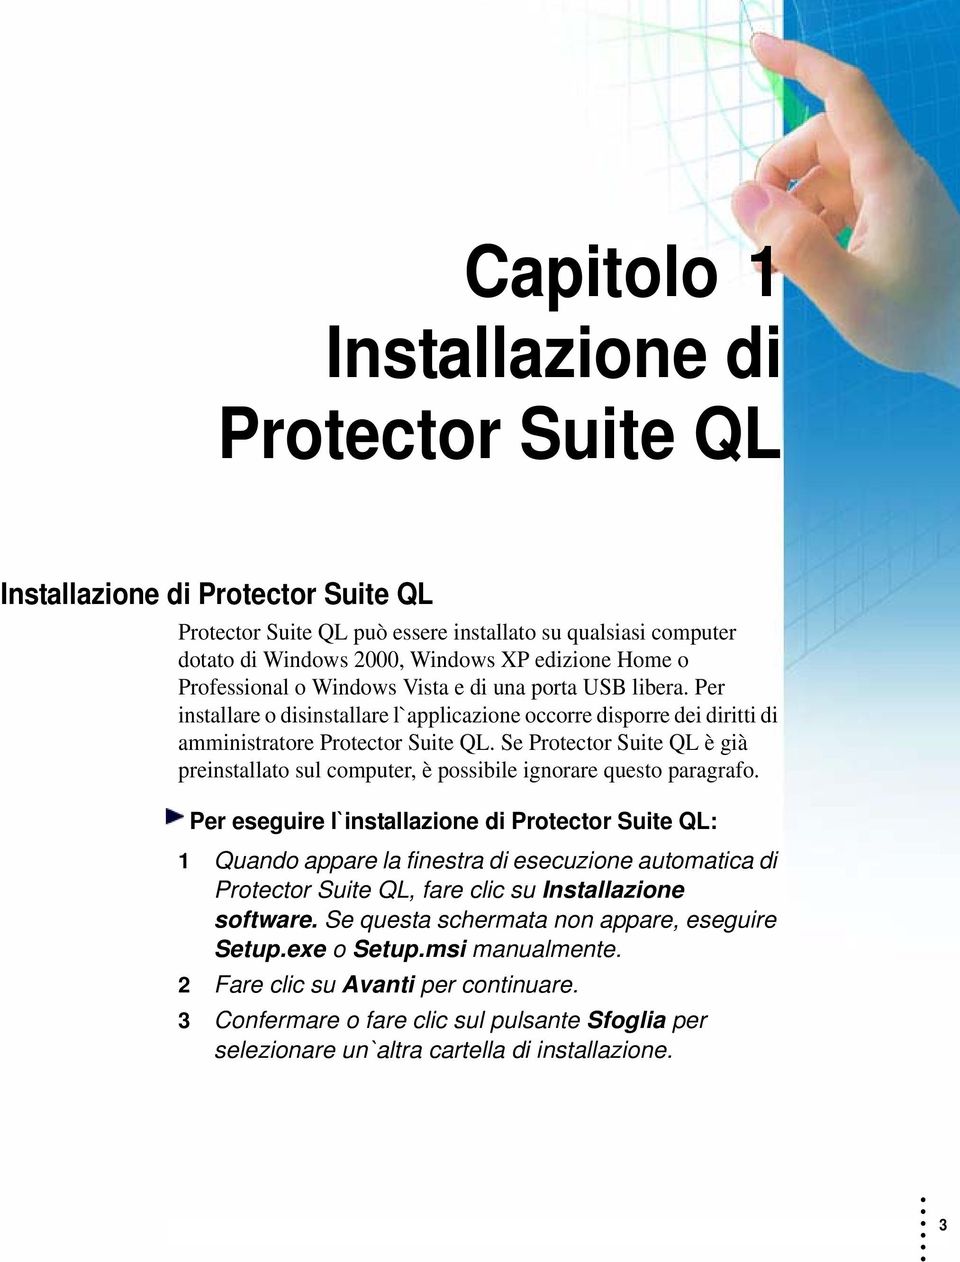 Se Protector Suite QL è già preinstallato sul computer, è possibile ignorare questo paragrafo.